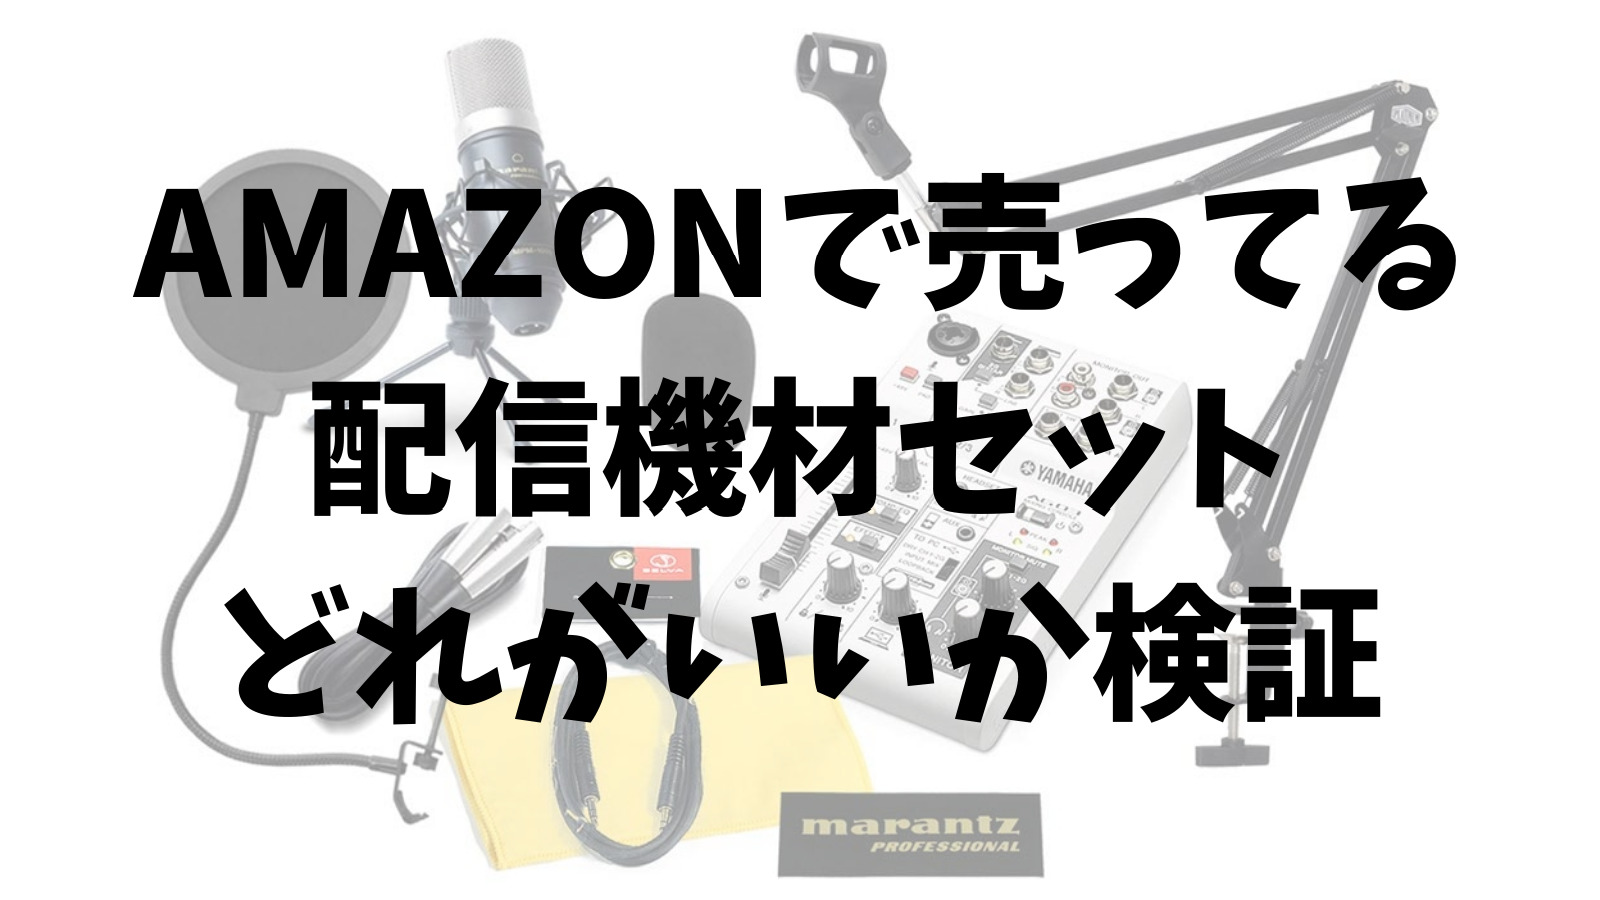 AG03あり】Amazonで揃うお得な配信機材セット【オーディオ 